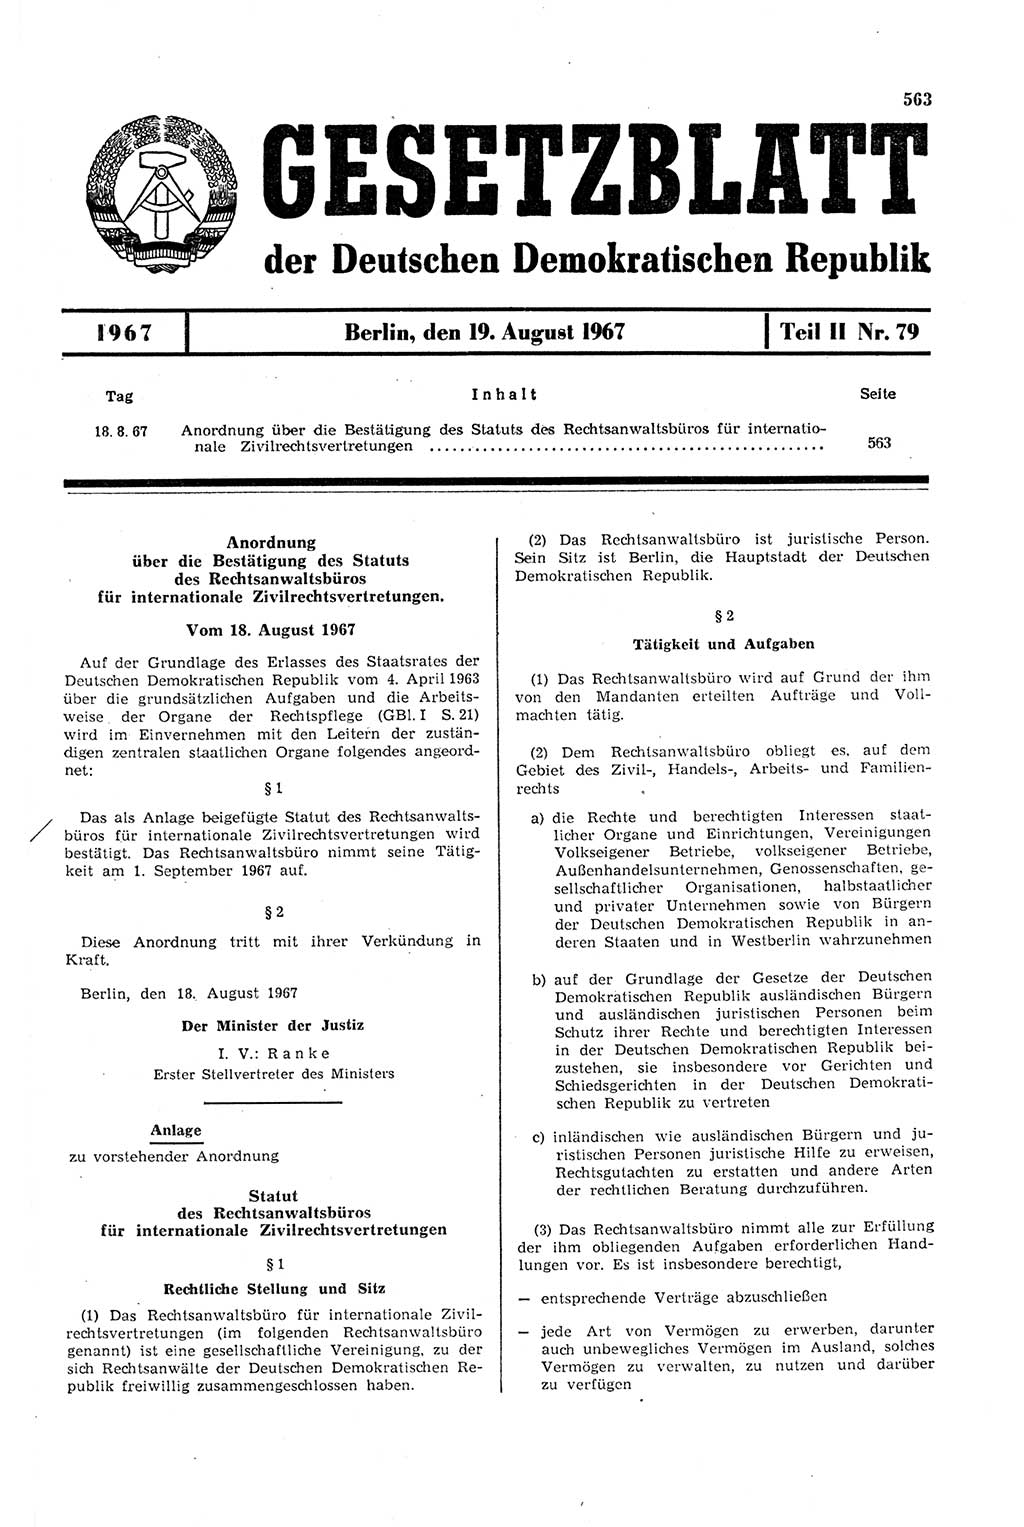 Gesetzblatt (GBl.) der Deutschen Demokratischen Republik (DDR) Teil ⅠⅠ 1967, Seite 563 (GBl. DDR ⅠⅠ 1967, S. 563)